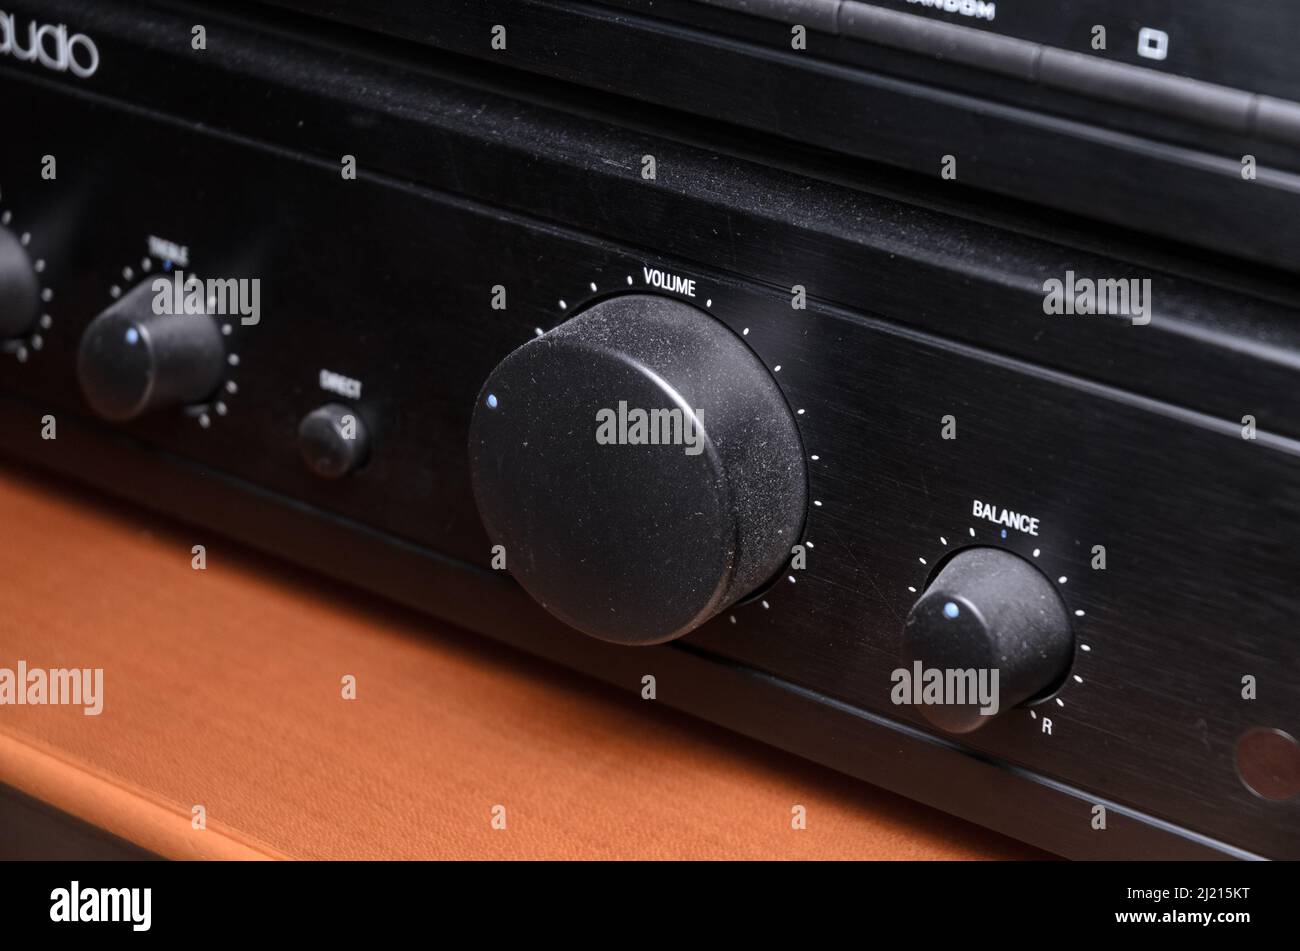 Stereo di casa immagini e fotografie stock ad alta risoluzione - Alamy